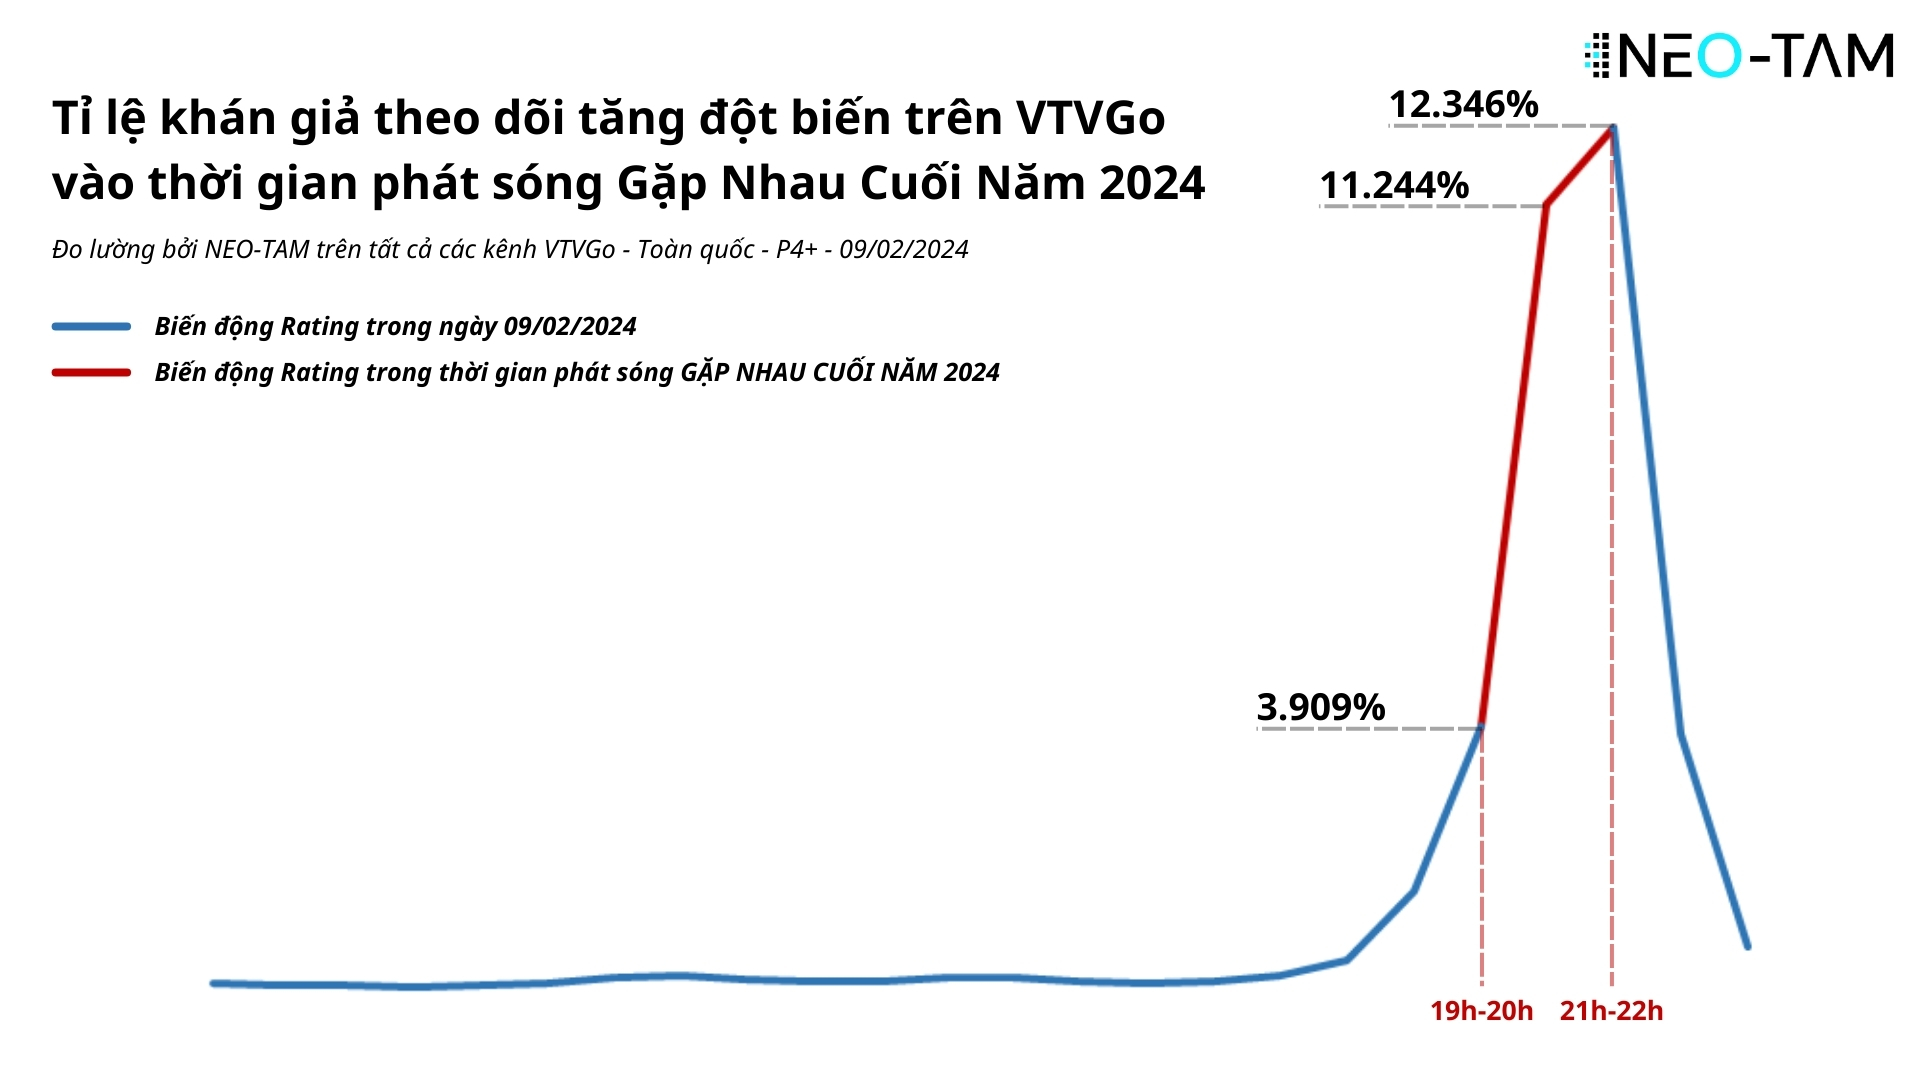 Biến động Rating Gặp nhau cuối năm 2024 trên VTVGo